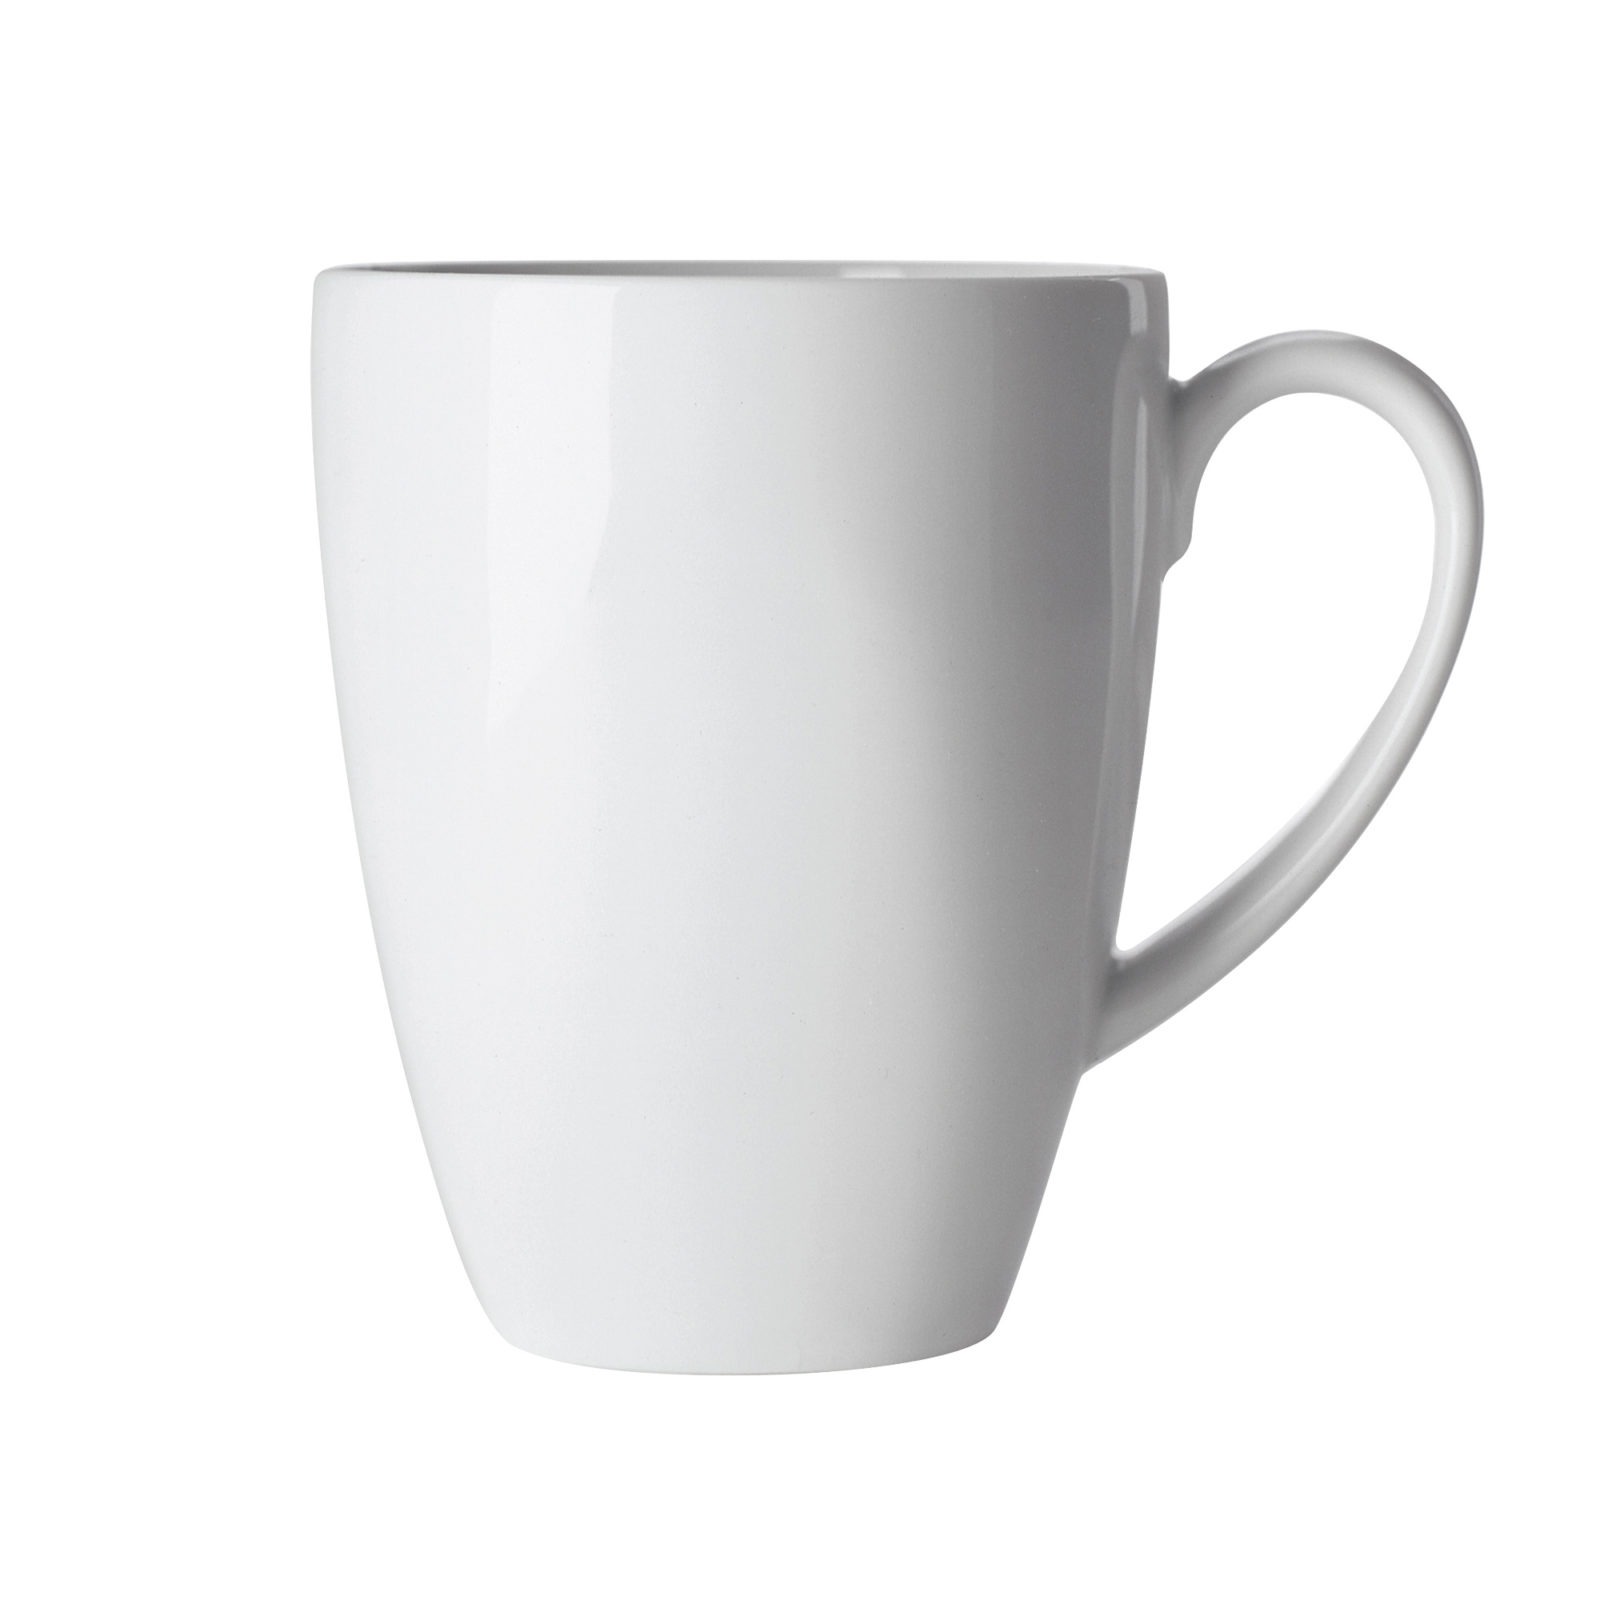 IKEA 365+ mug.